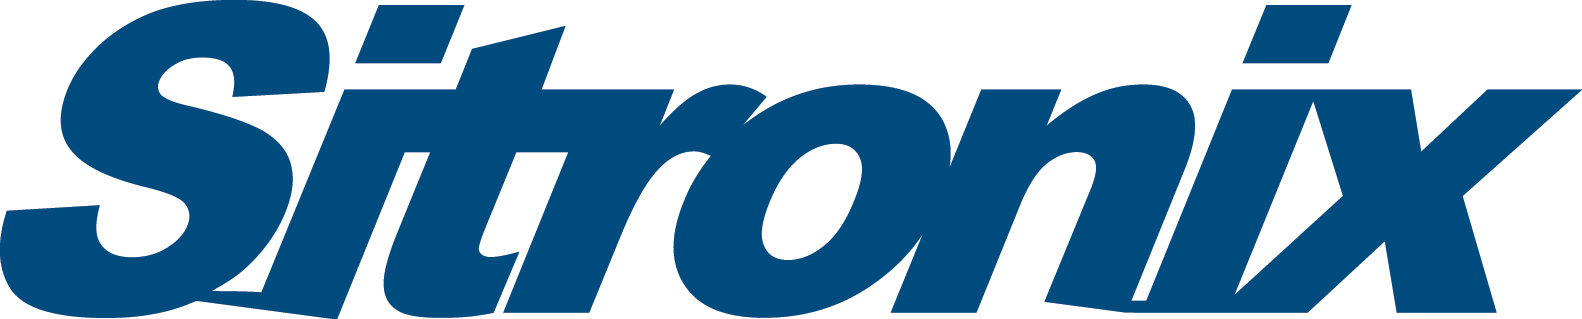 飛騰雲端客戶-矽創電子logo